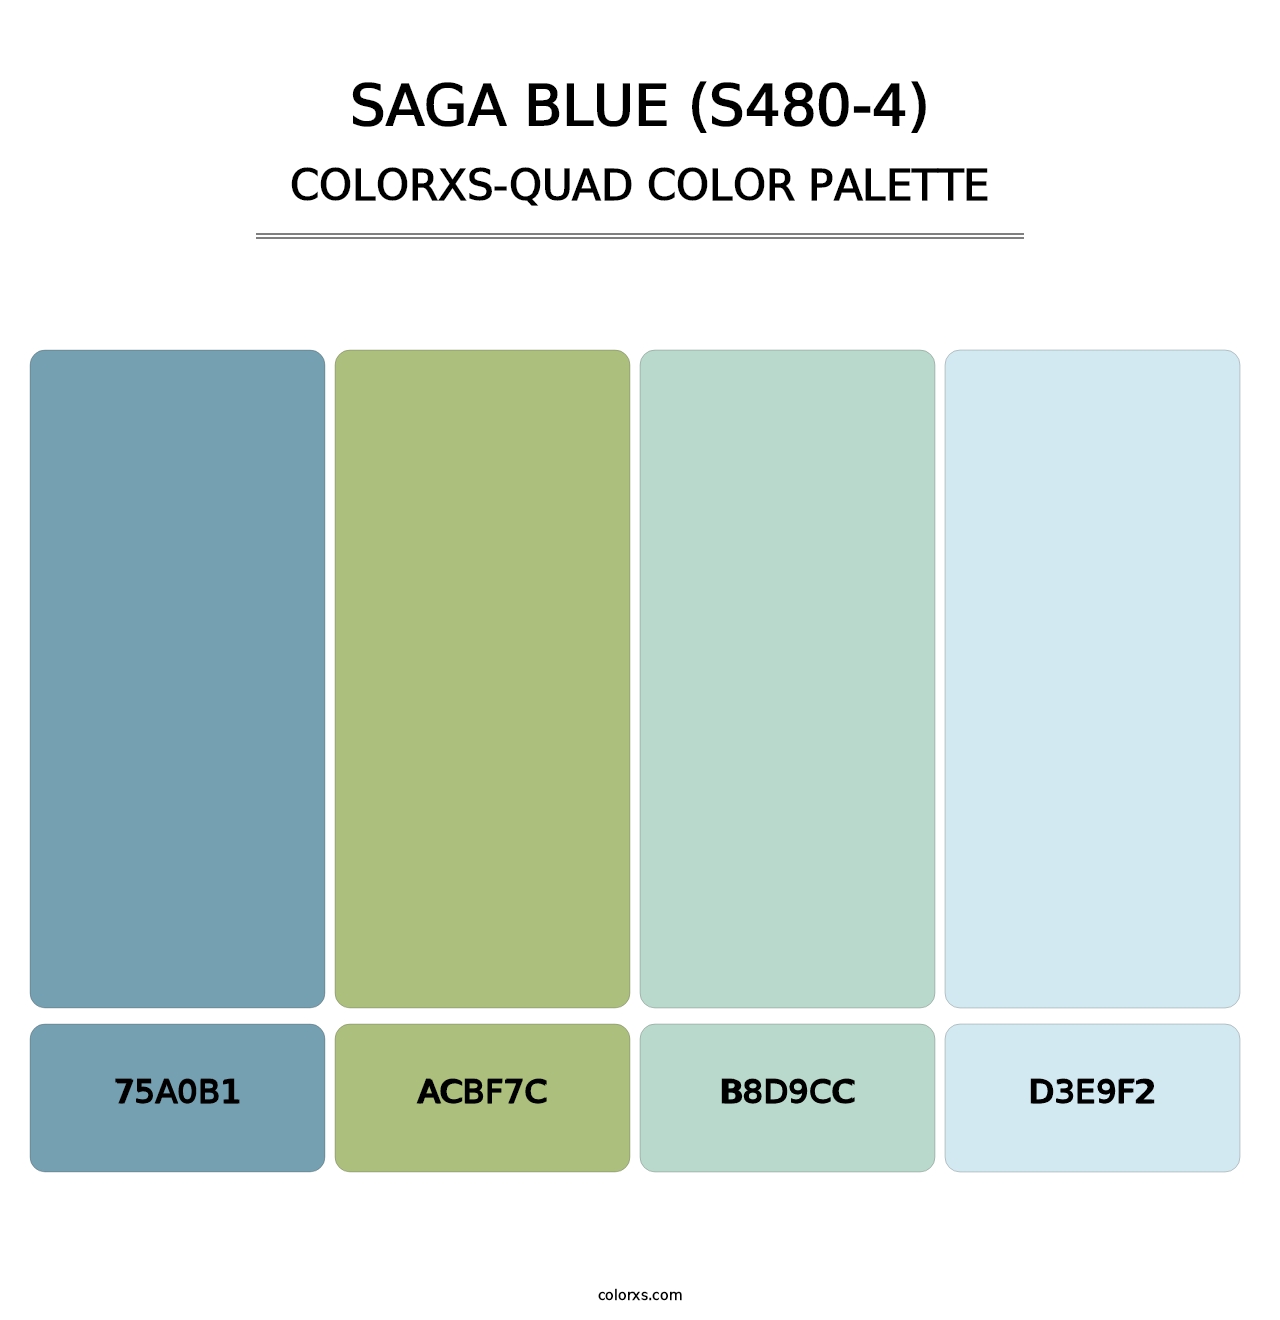 Saga Blue (S480-4) - Colorxs Quad Palette